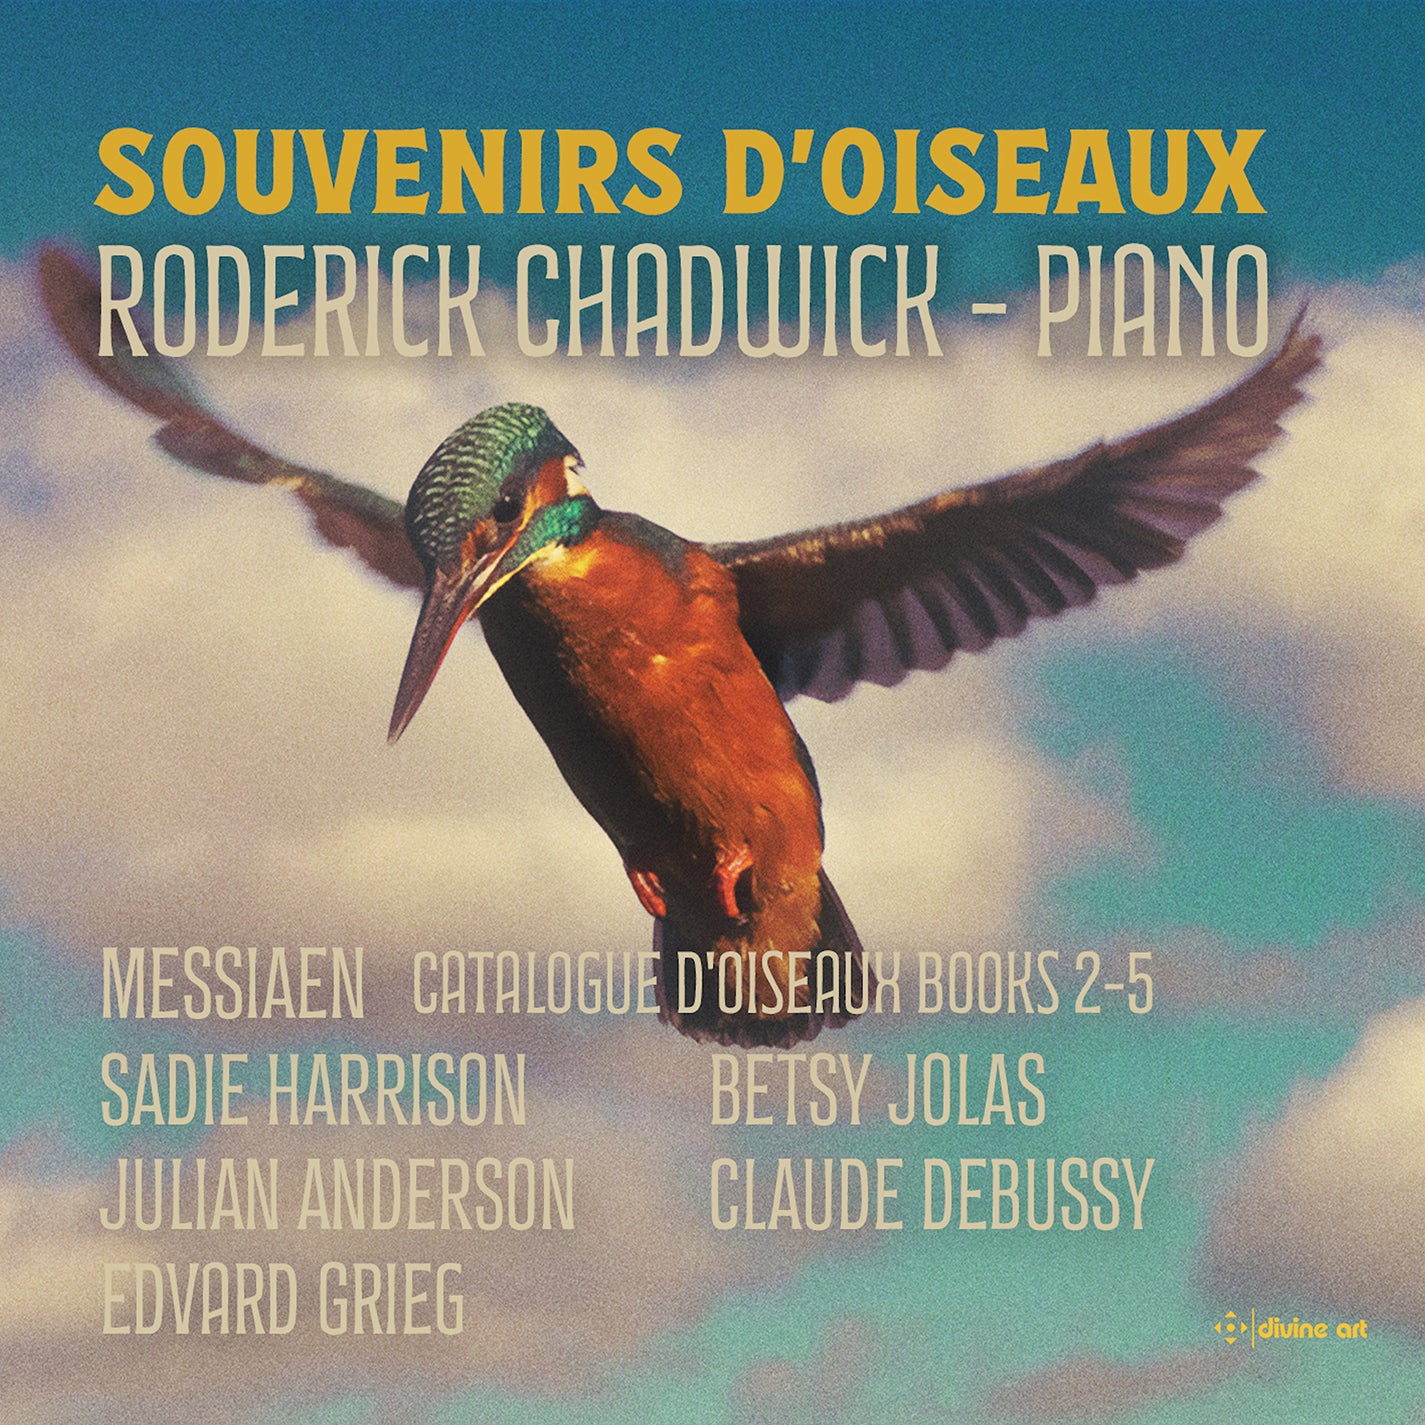 Debussy, Grieg, Jolas, Messiaen et al: Souvenirs d'oiseaux / R. Chadwick